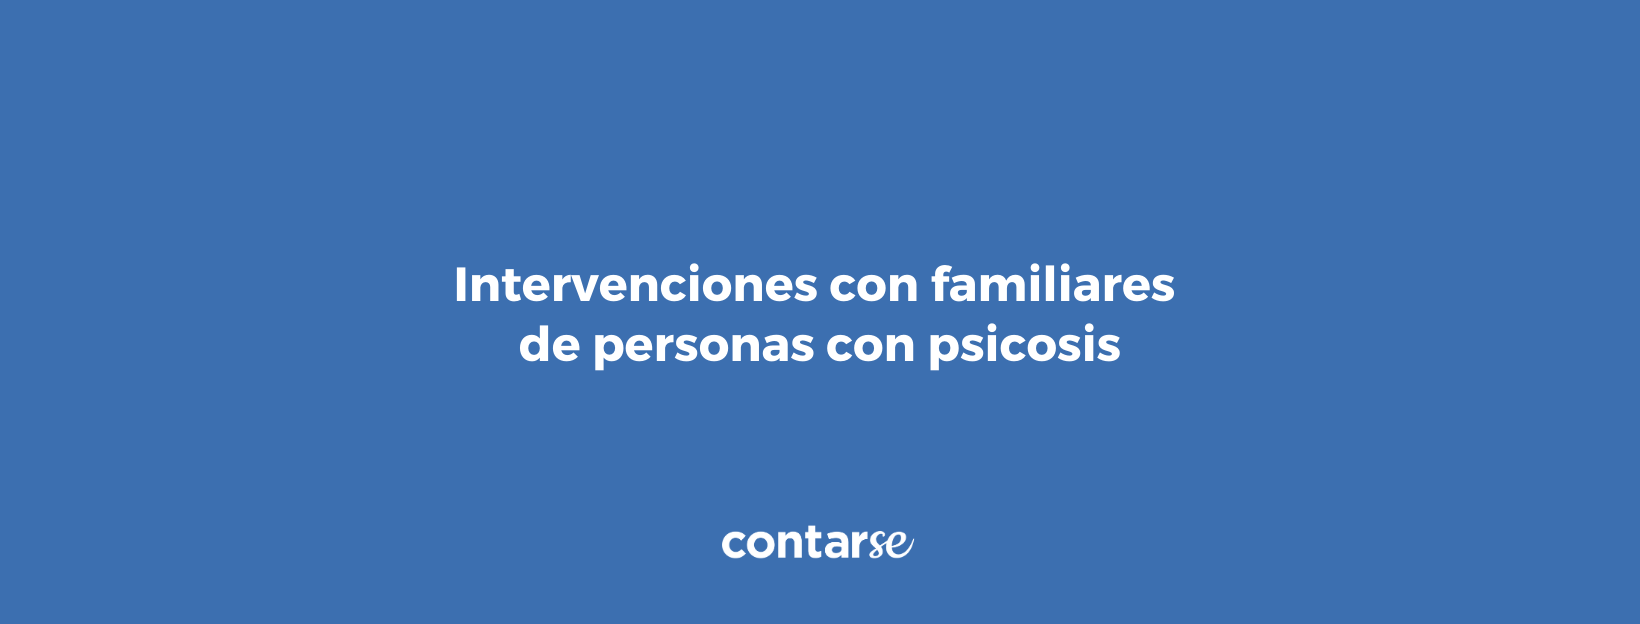 Taller “Intervenciones con familiares de personas con psicosis”